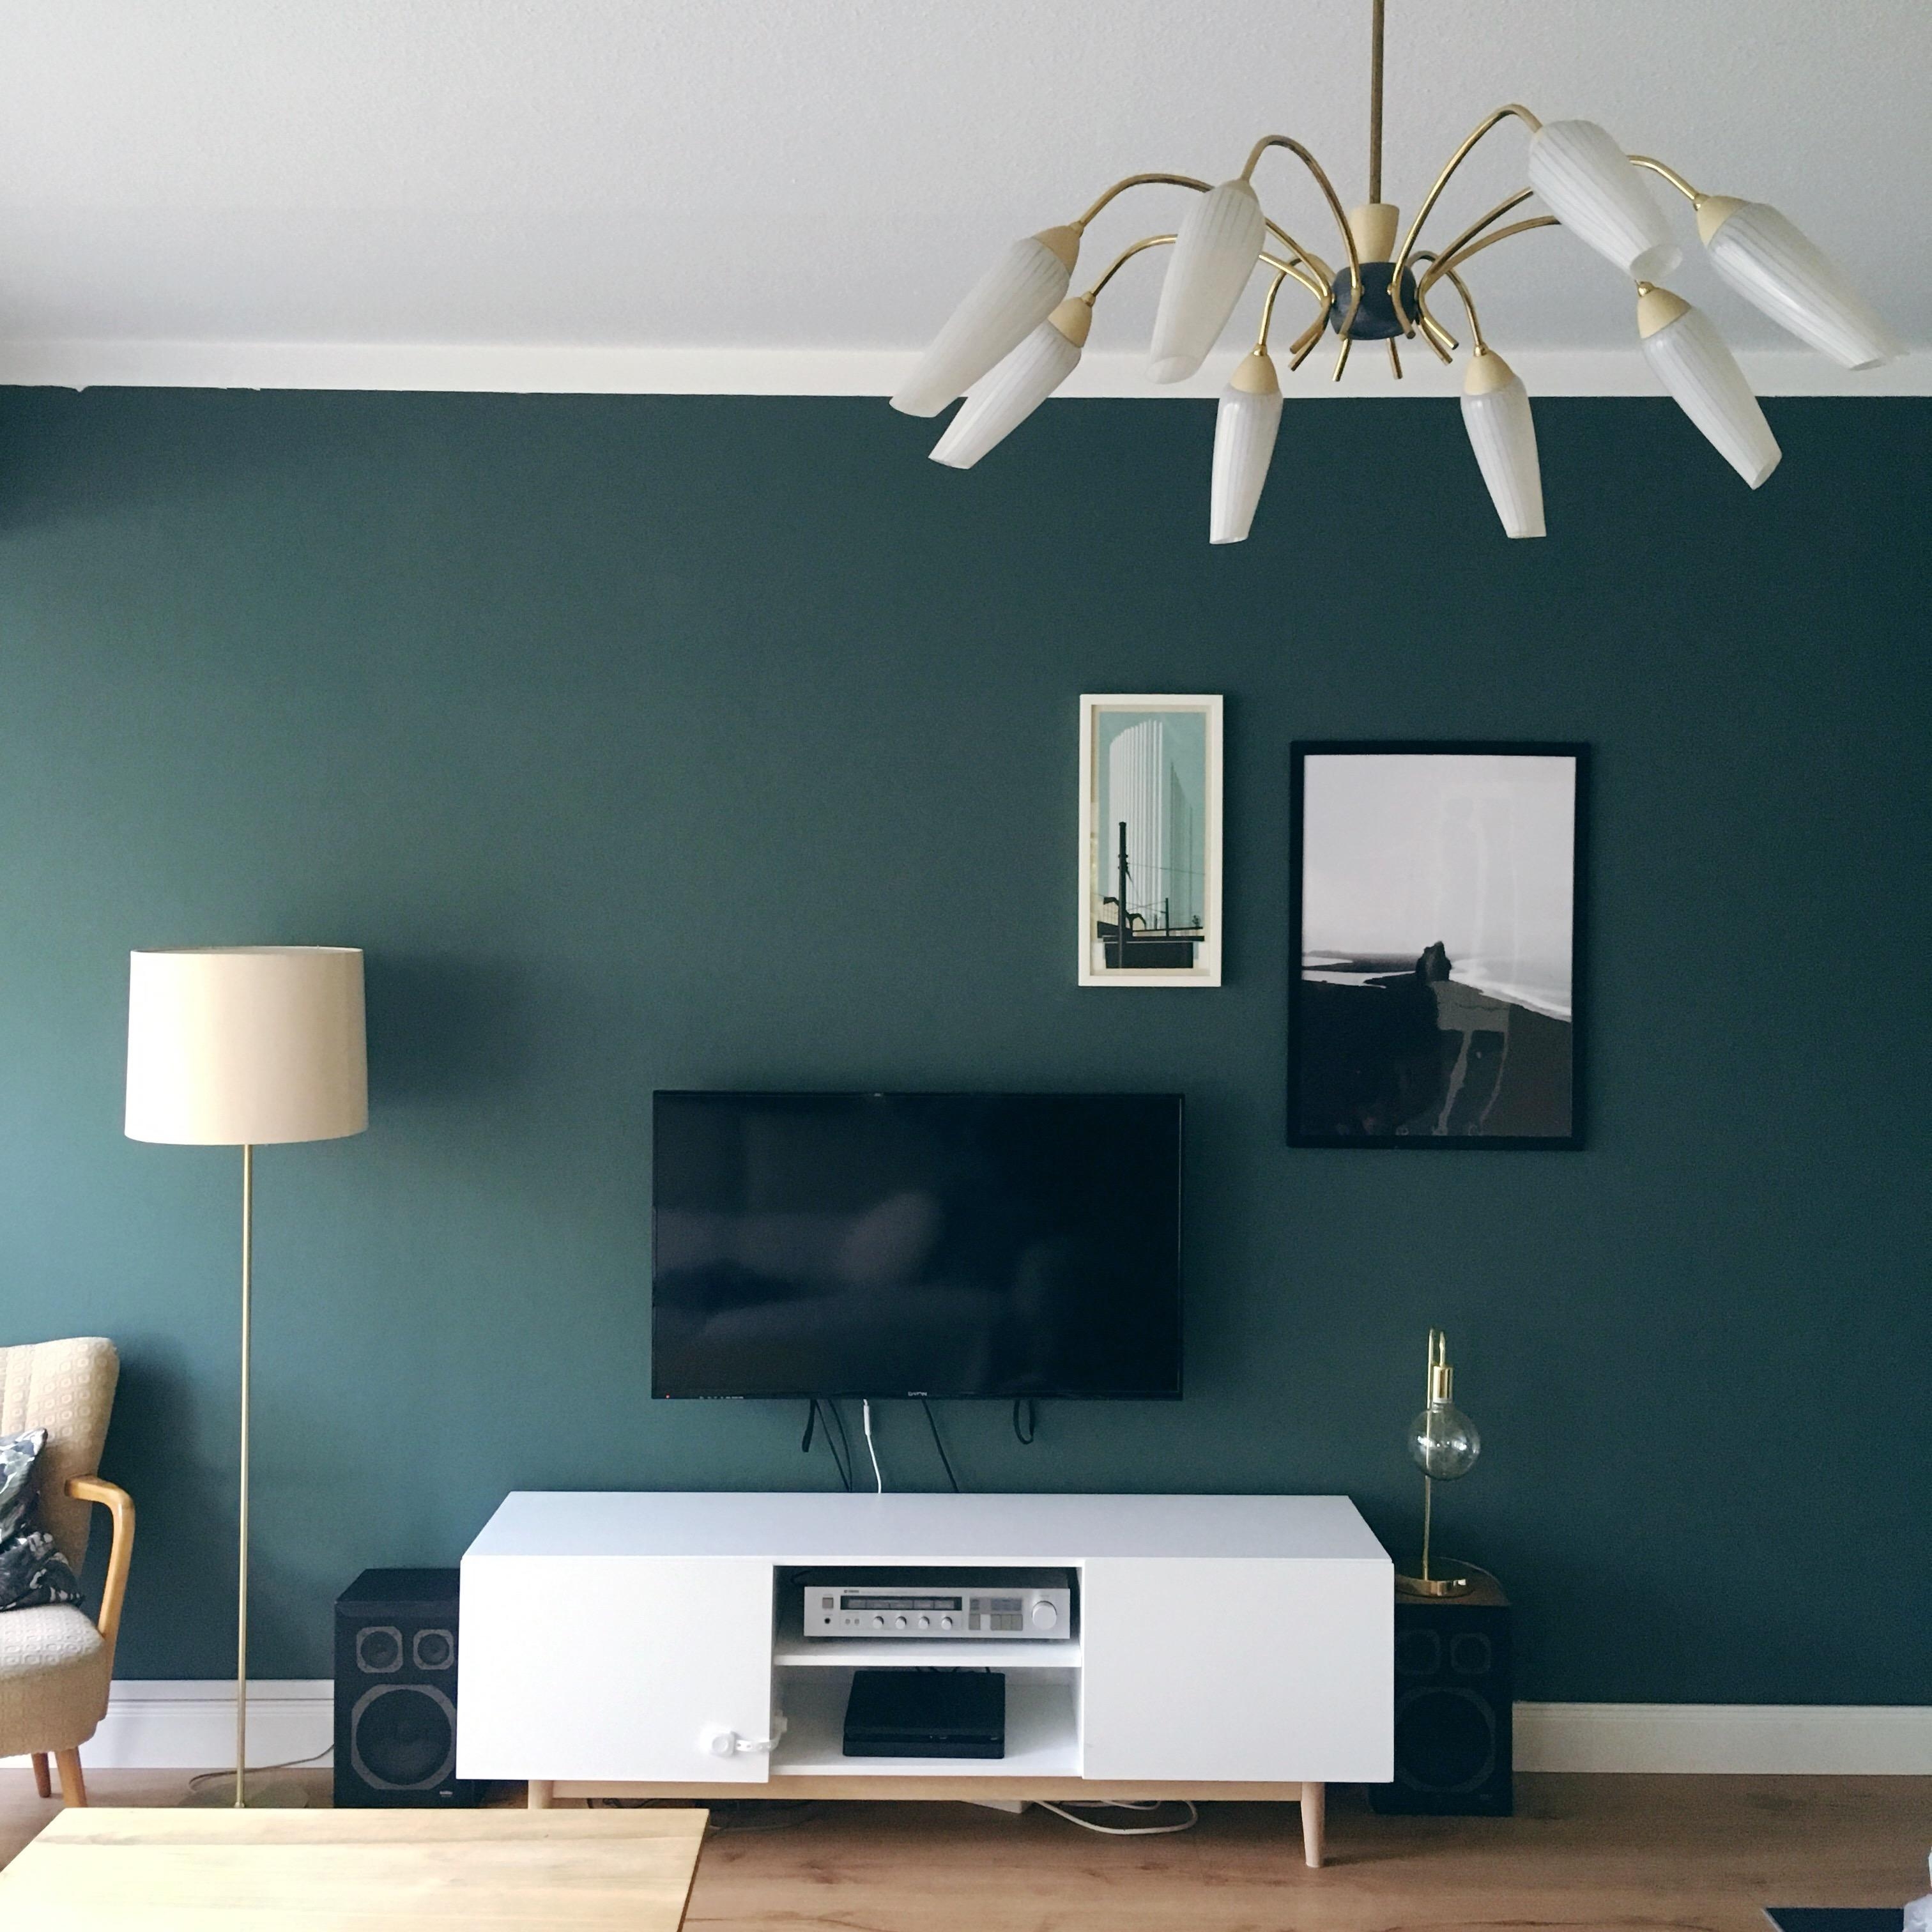 Unsere neue Wohnzimmergestaltung mit neuer #wandfarbe. #livingroom #deco #decoration #wandgestaltung #wohnzimmer #home